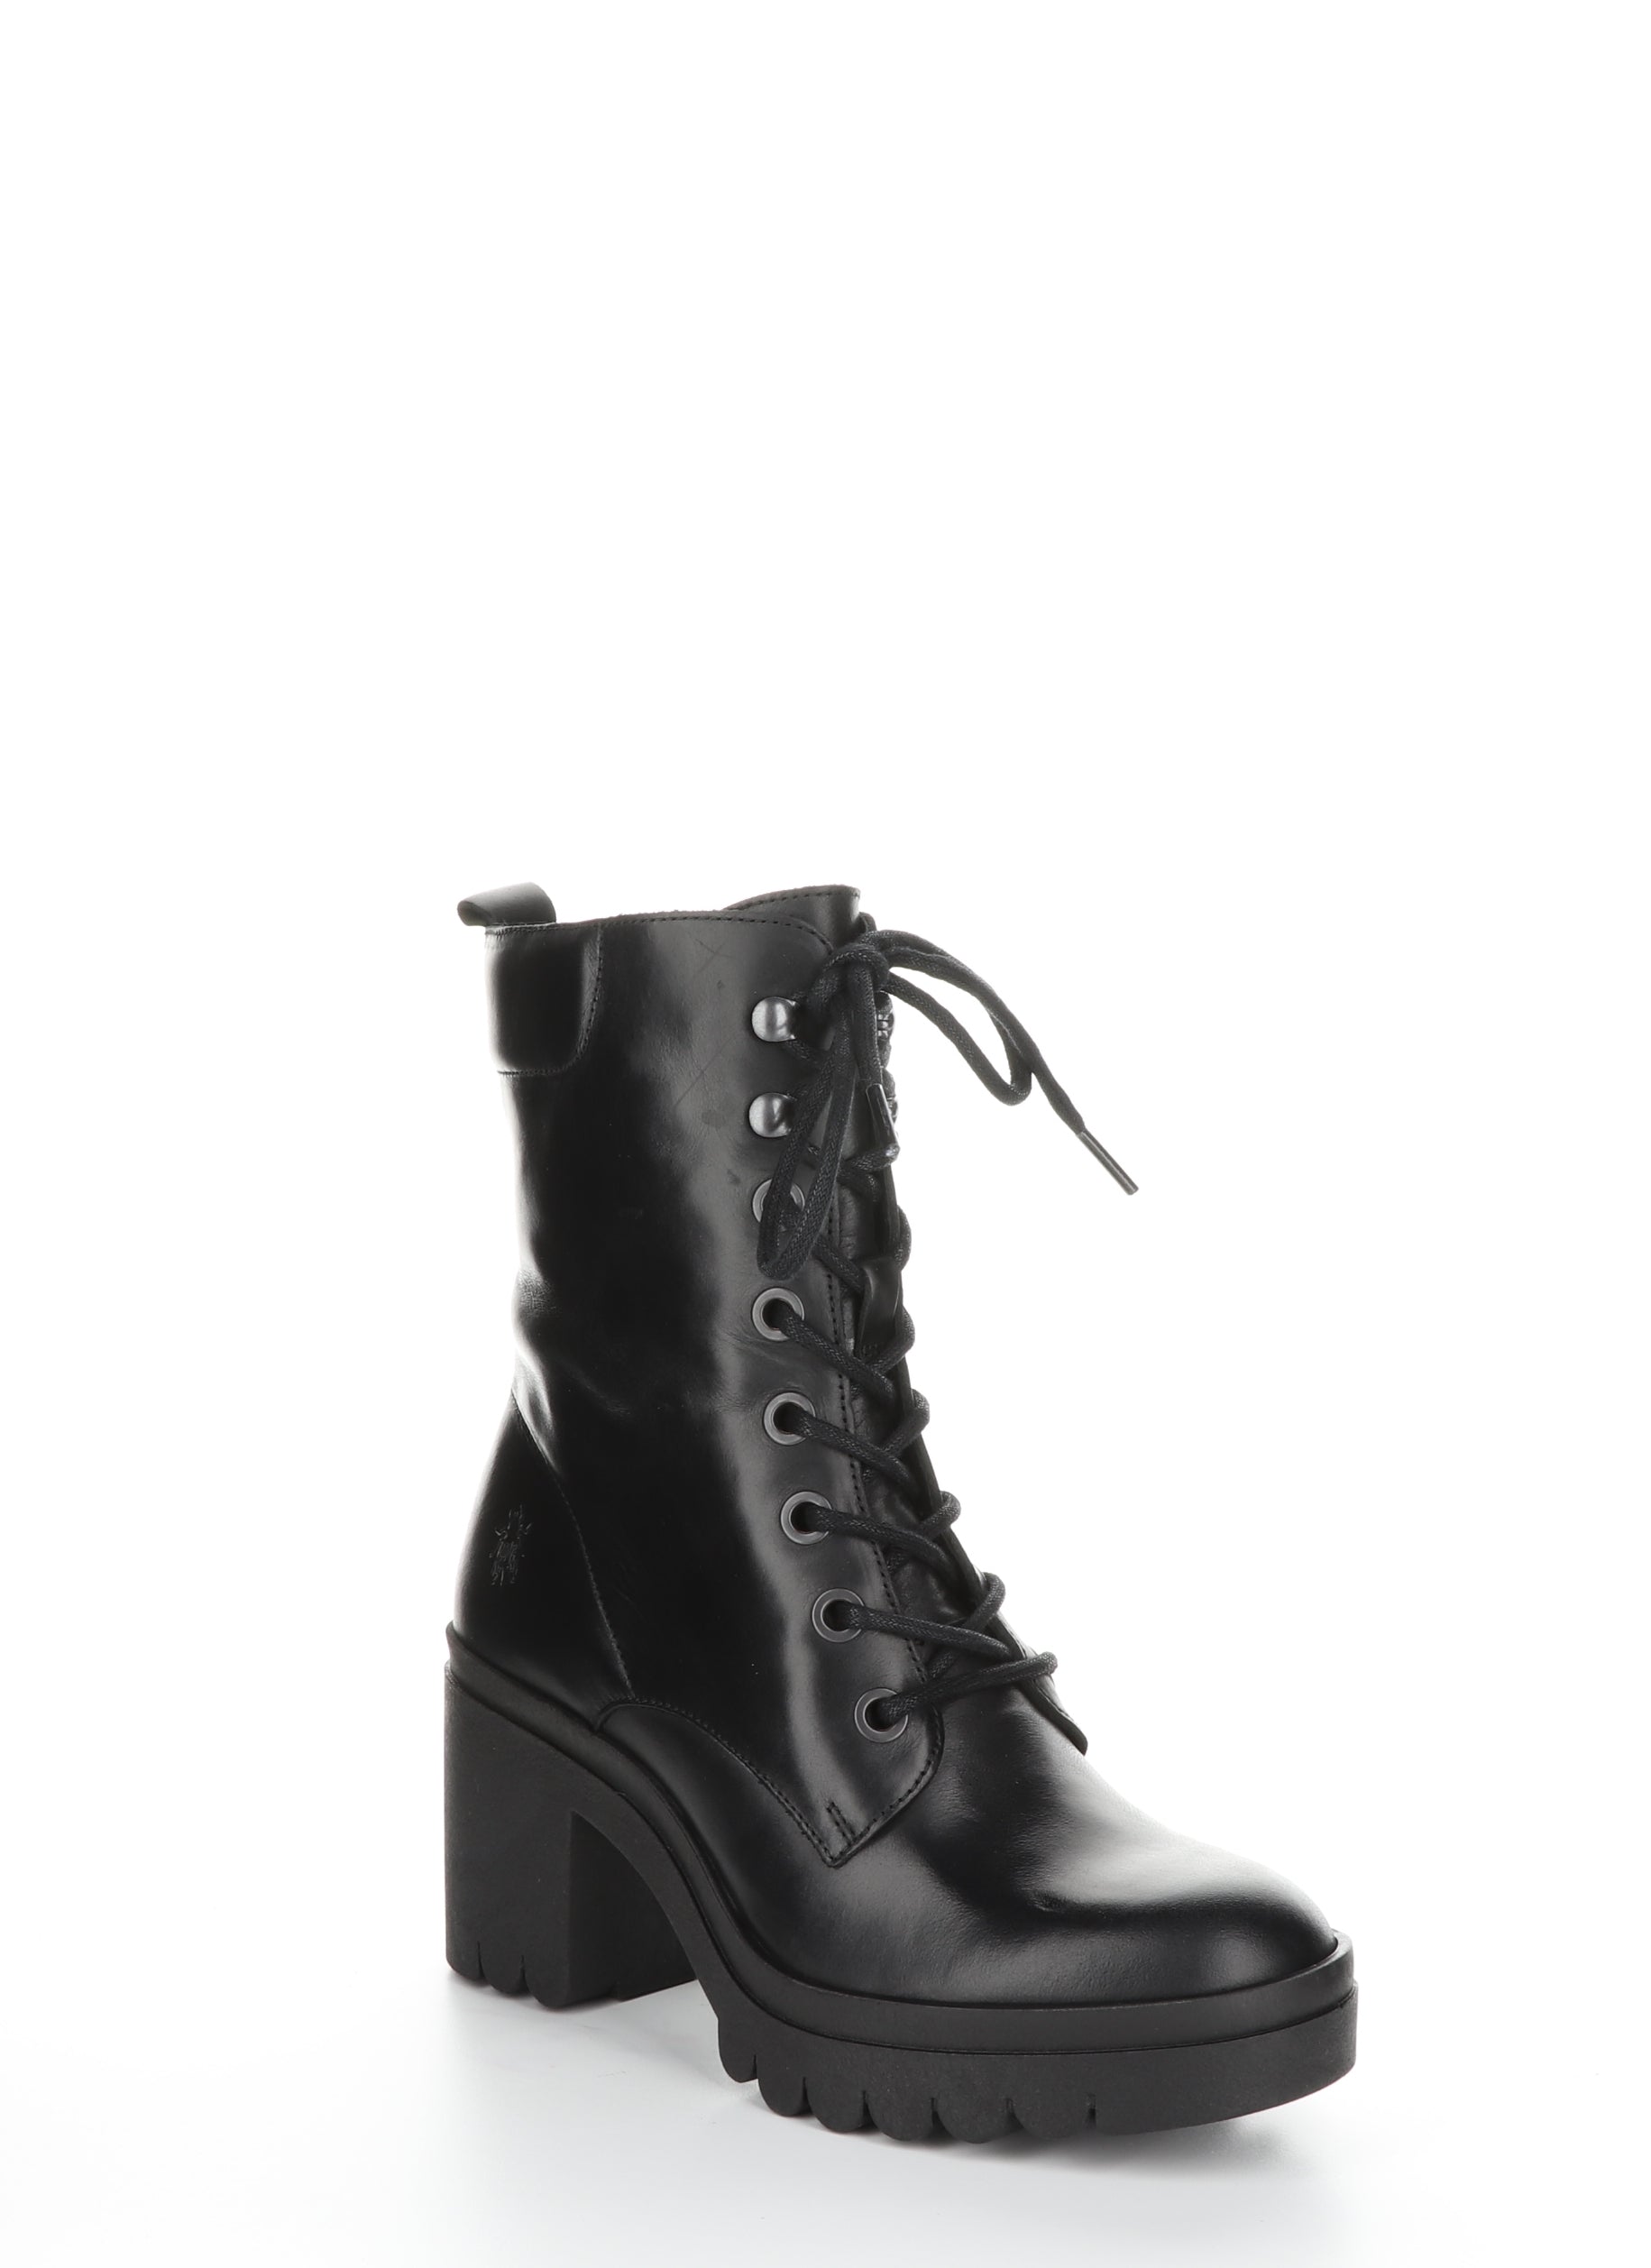 TIEL642FLY Black Zip Up Boots – BoscoUS